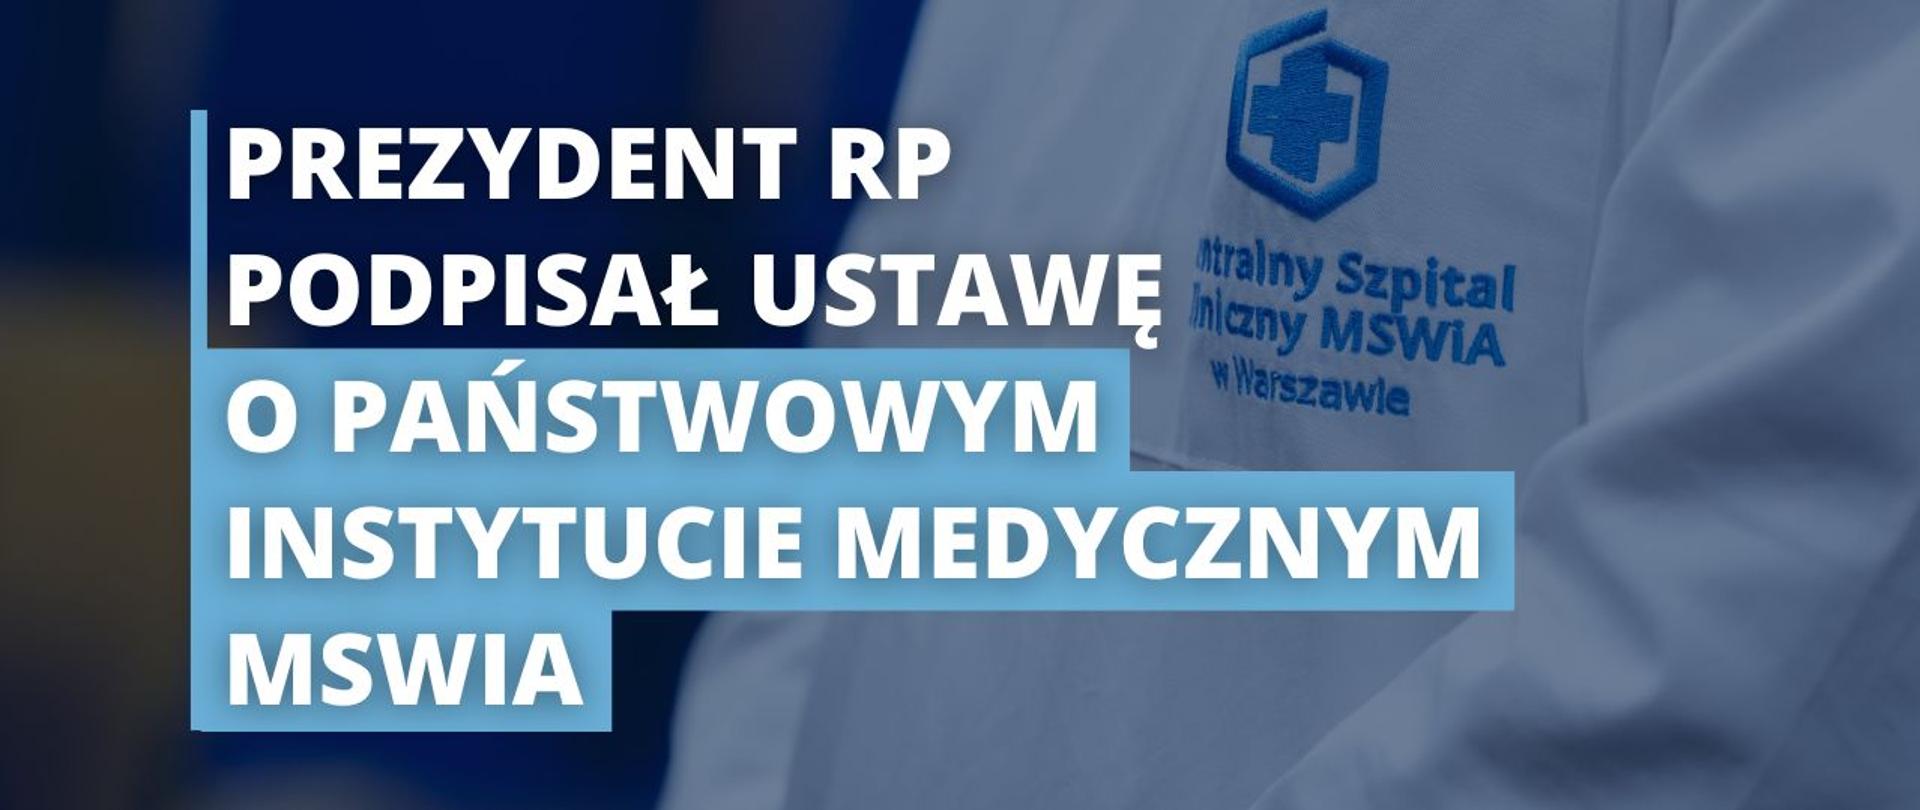 Prezydent RP podpisał ustawę o Państwowym Instytucie Medycznym MSWiA